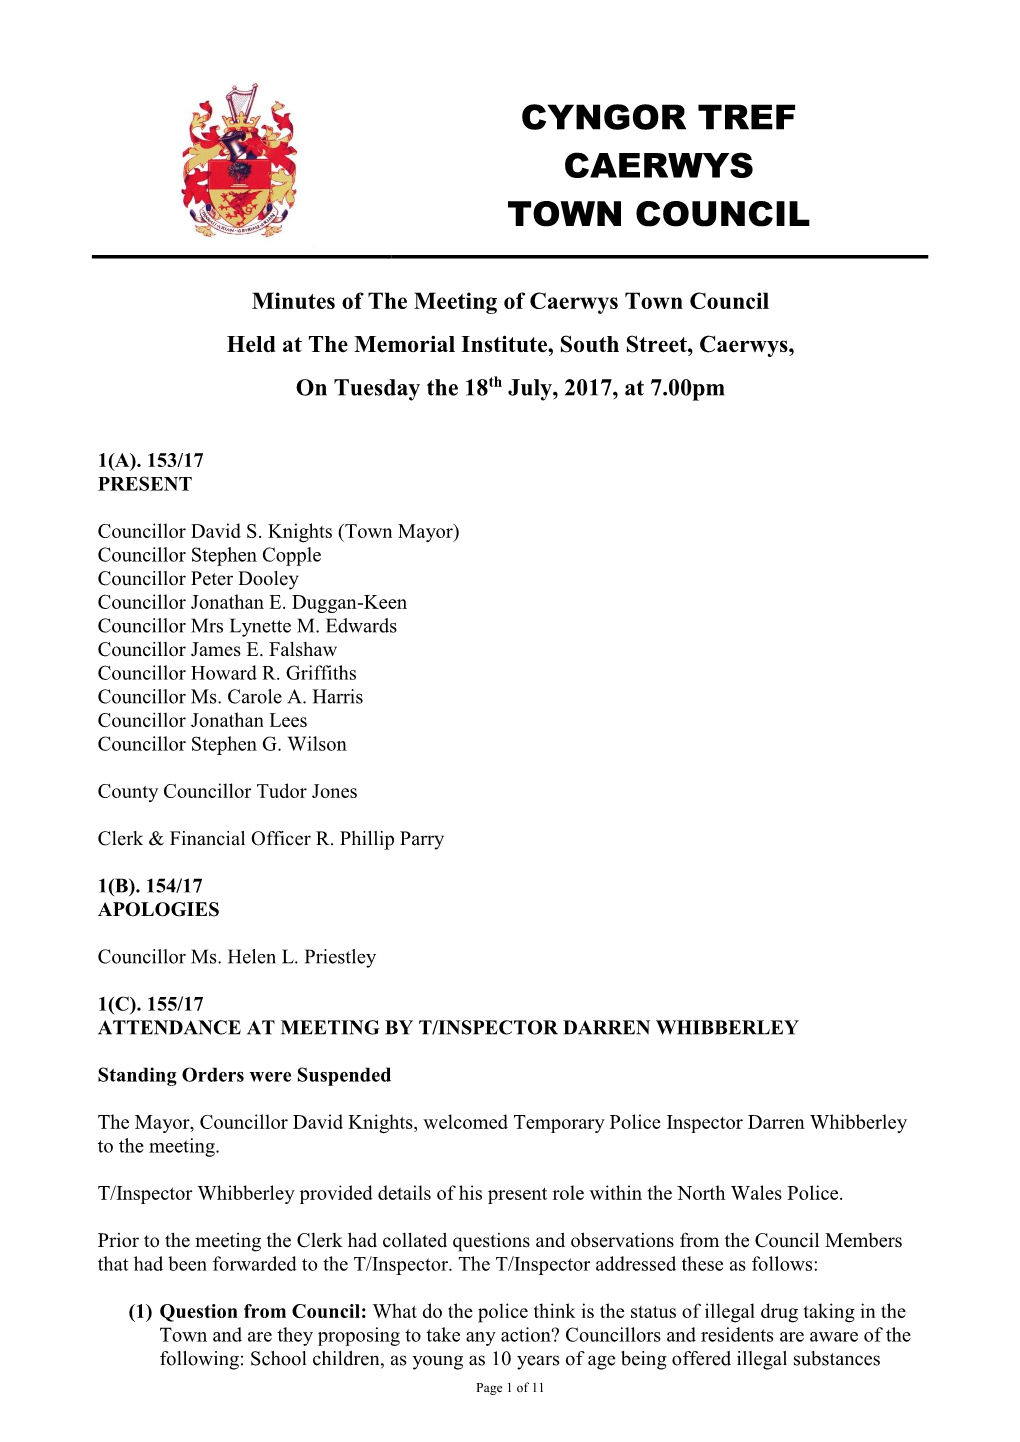 Cyngor Tref Caerwys Town Council